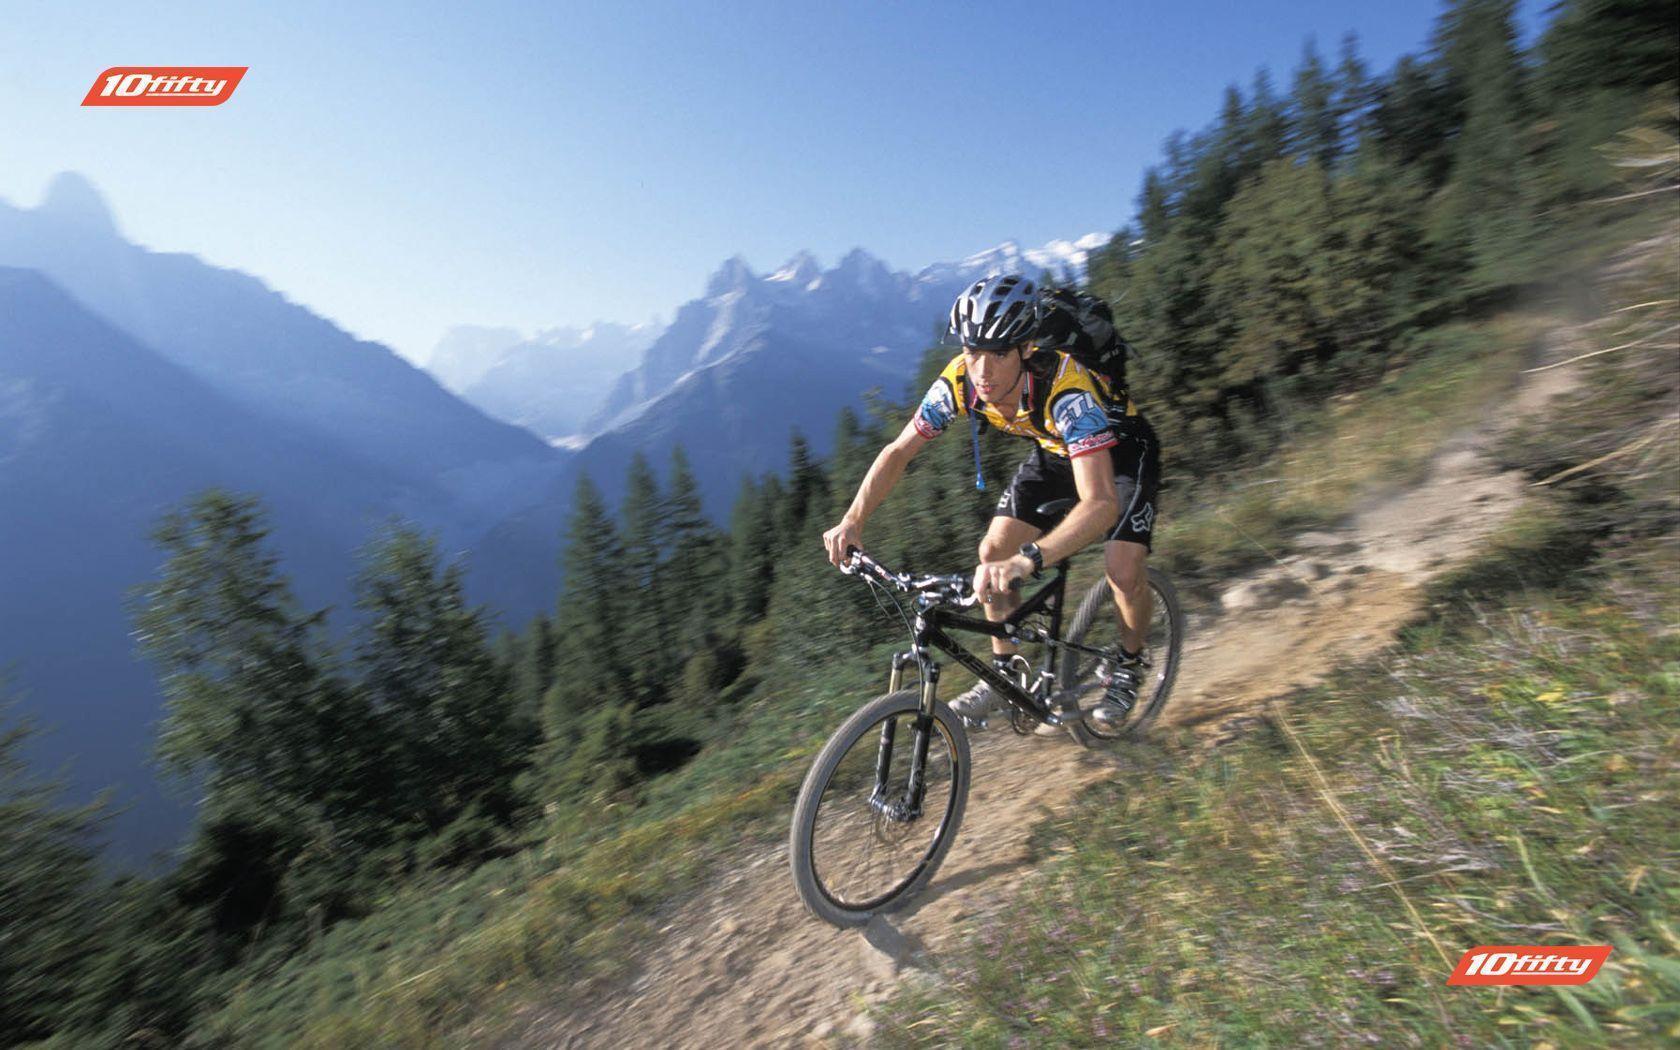 Mountain Bike Holidays, Chamonix and USA from 10fifty